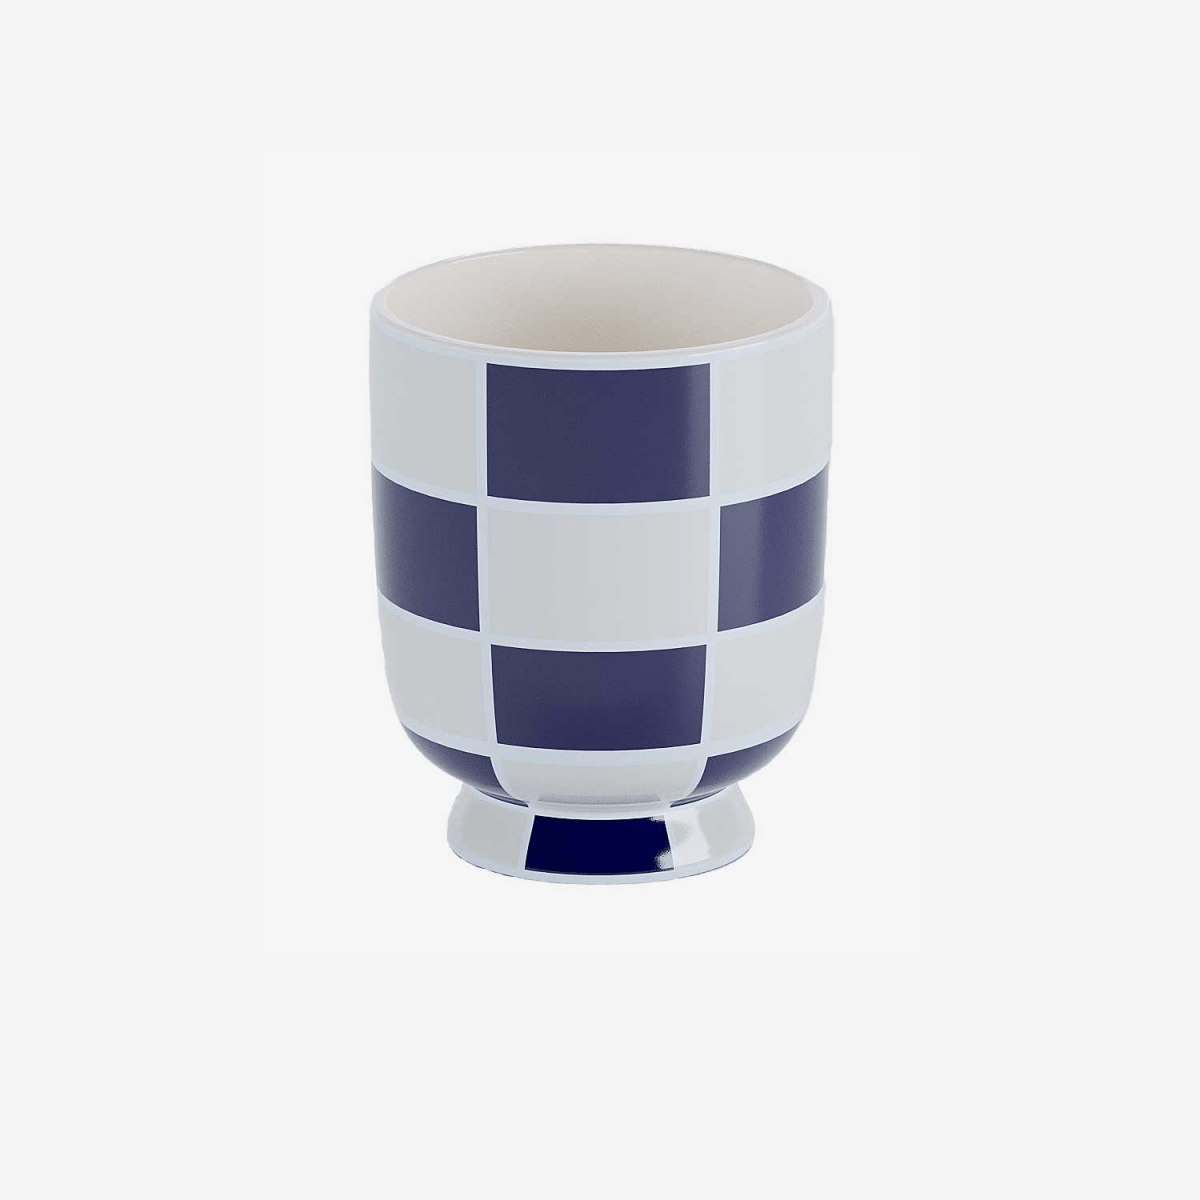 Ce vase, avec sa céramique à damier bleu marine, donne un style géométrique très moderne - Potiron Paris, décoration maison pas cher